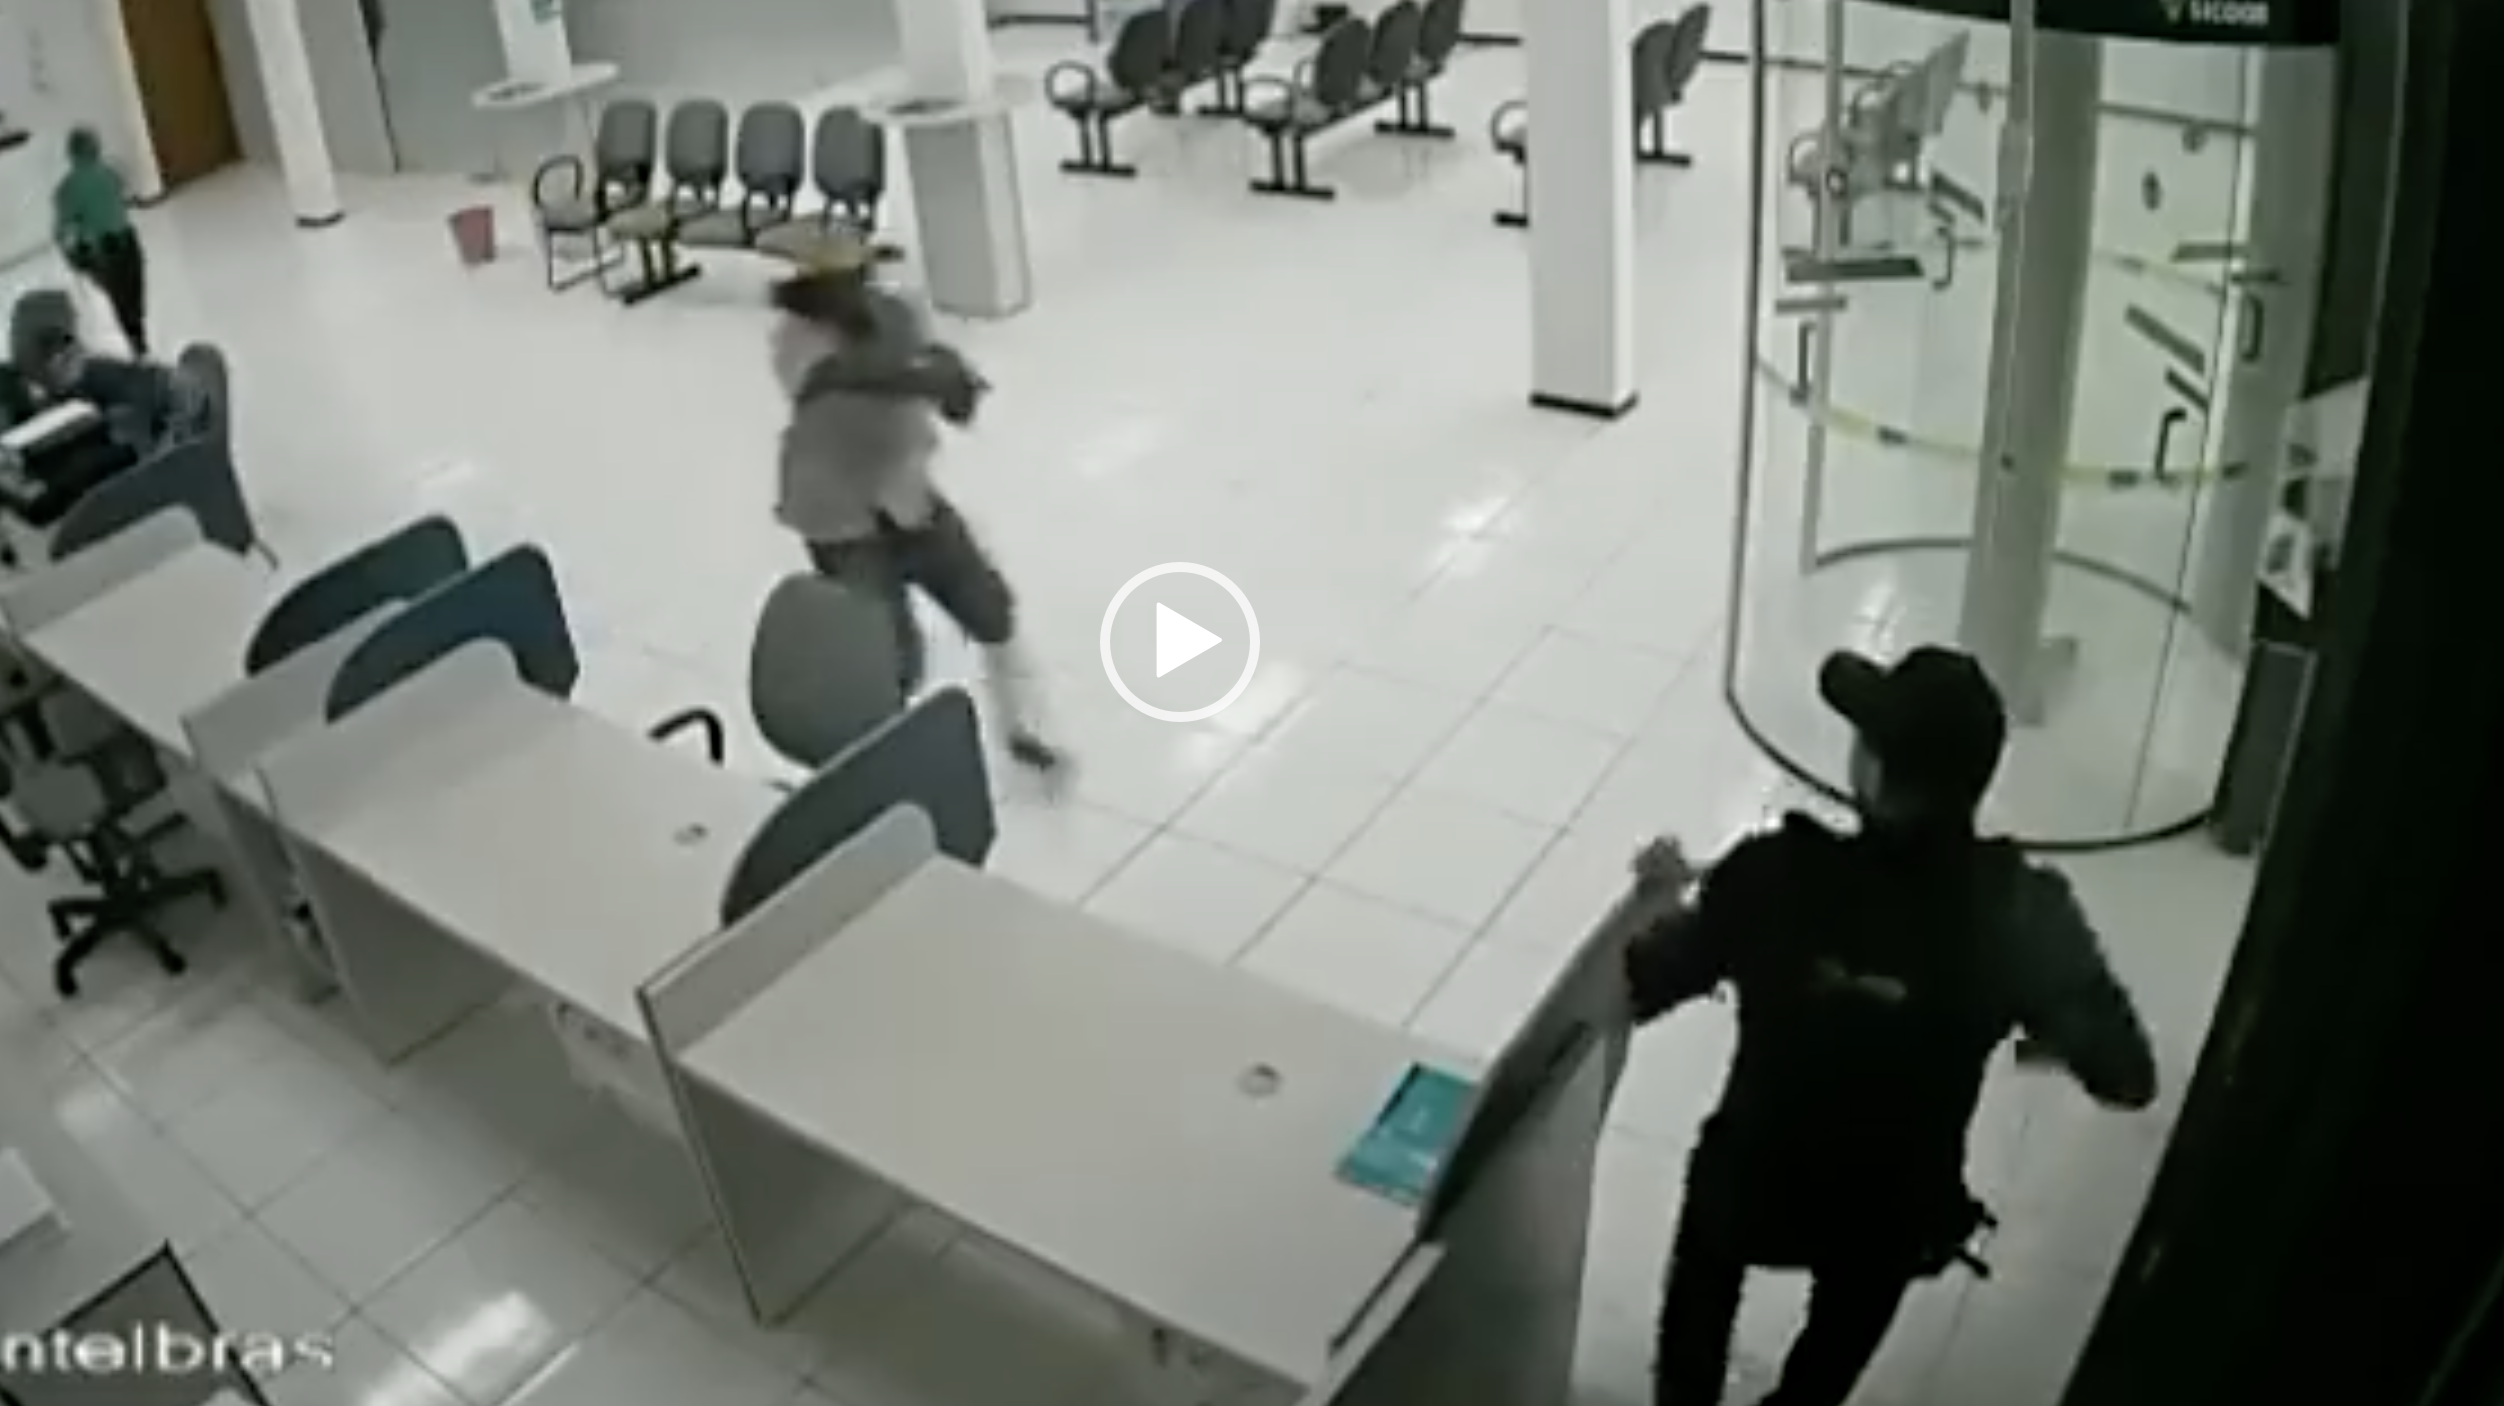 (VIDEO) Guardia de seguridad repele asalto contra banco en Brasil